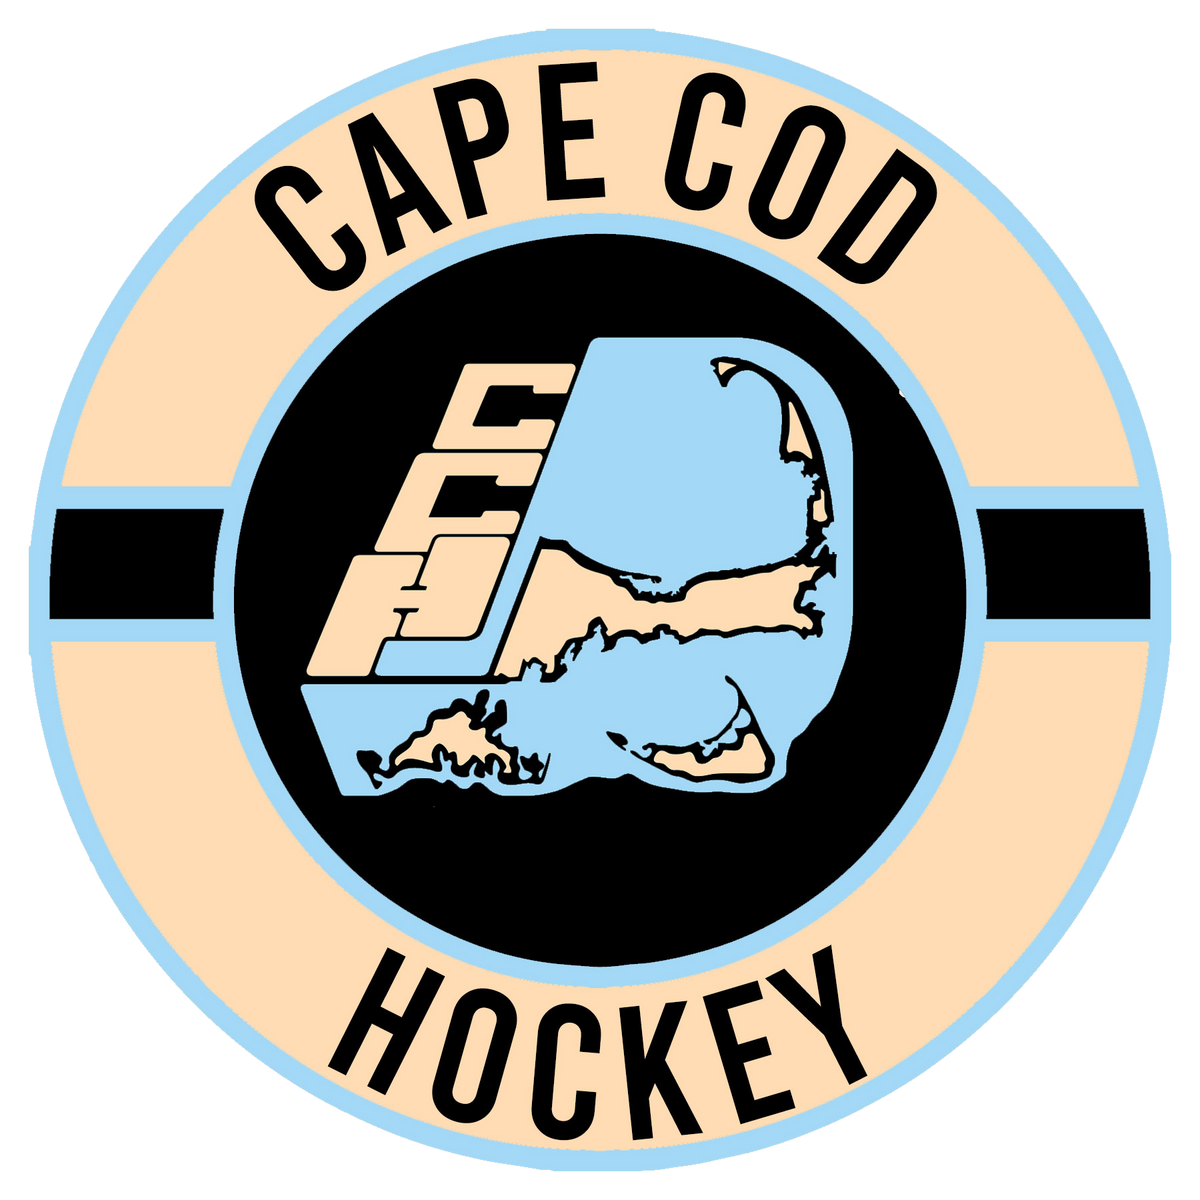 Cape Cod Hockey